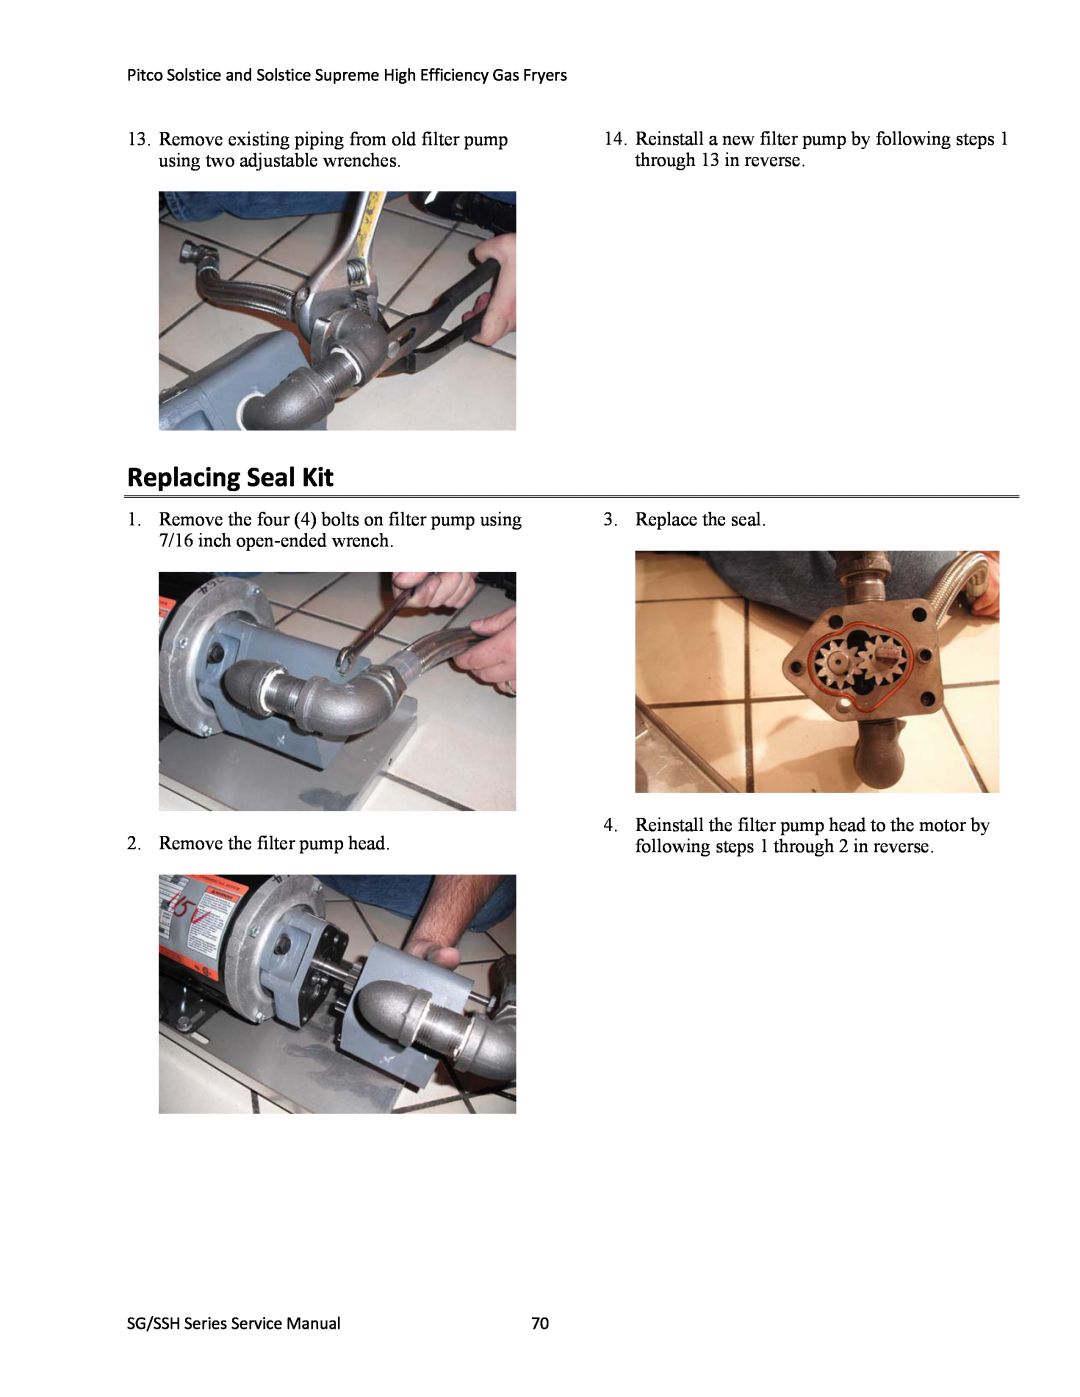 Pitco Frialator L22-345 manual Replacing Seal Kit 